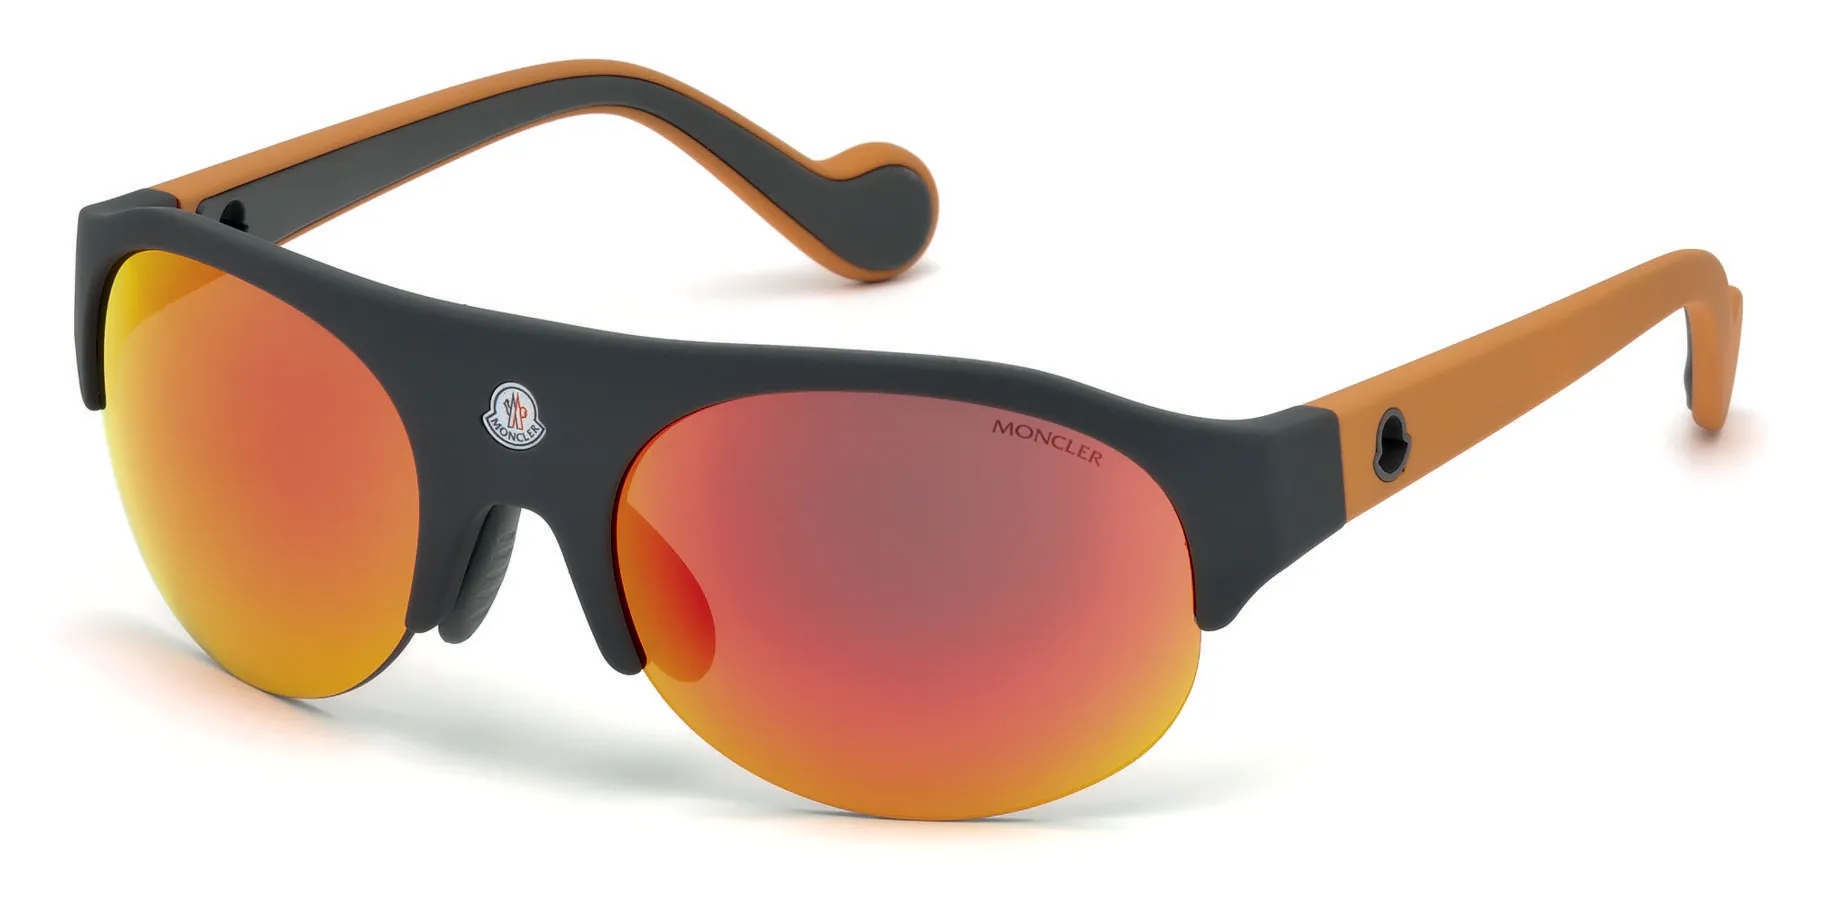 Gafas de sol de Moncler. Además de sus preparados abrigos, Moncler tiene en su colección gafas de sol como estas perfectas para amantes del esquí pero también para el día a día más informal (CPV)